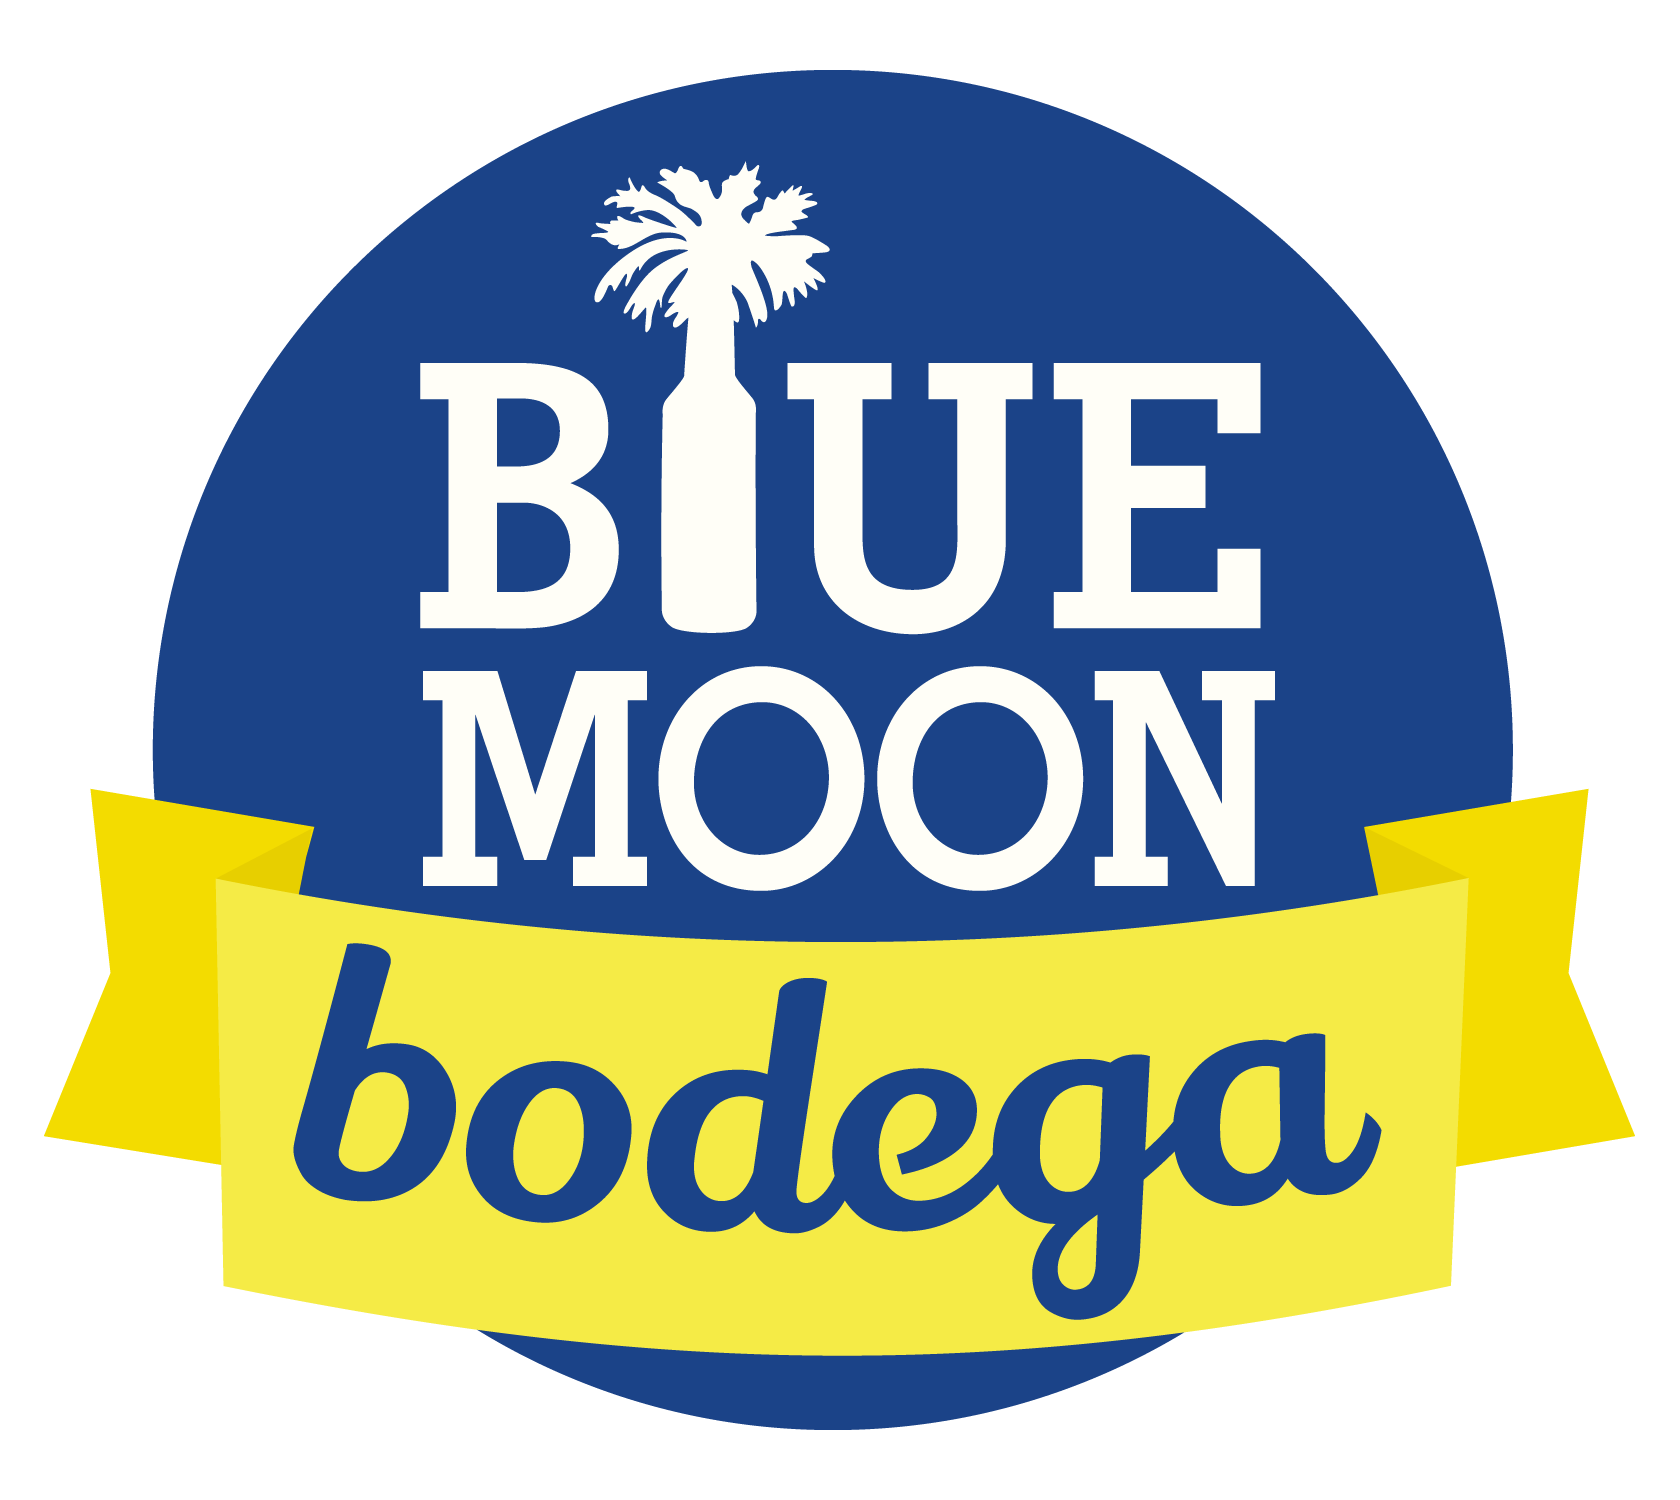 Blue Moon Bodega